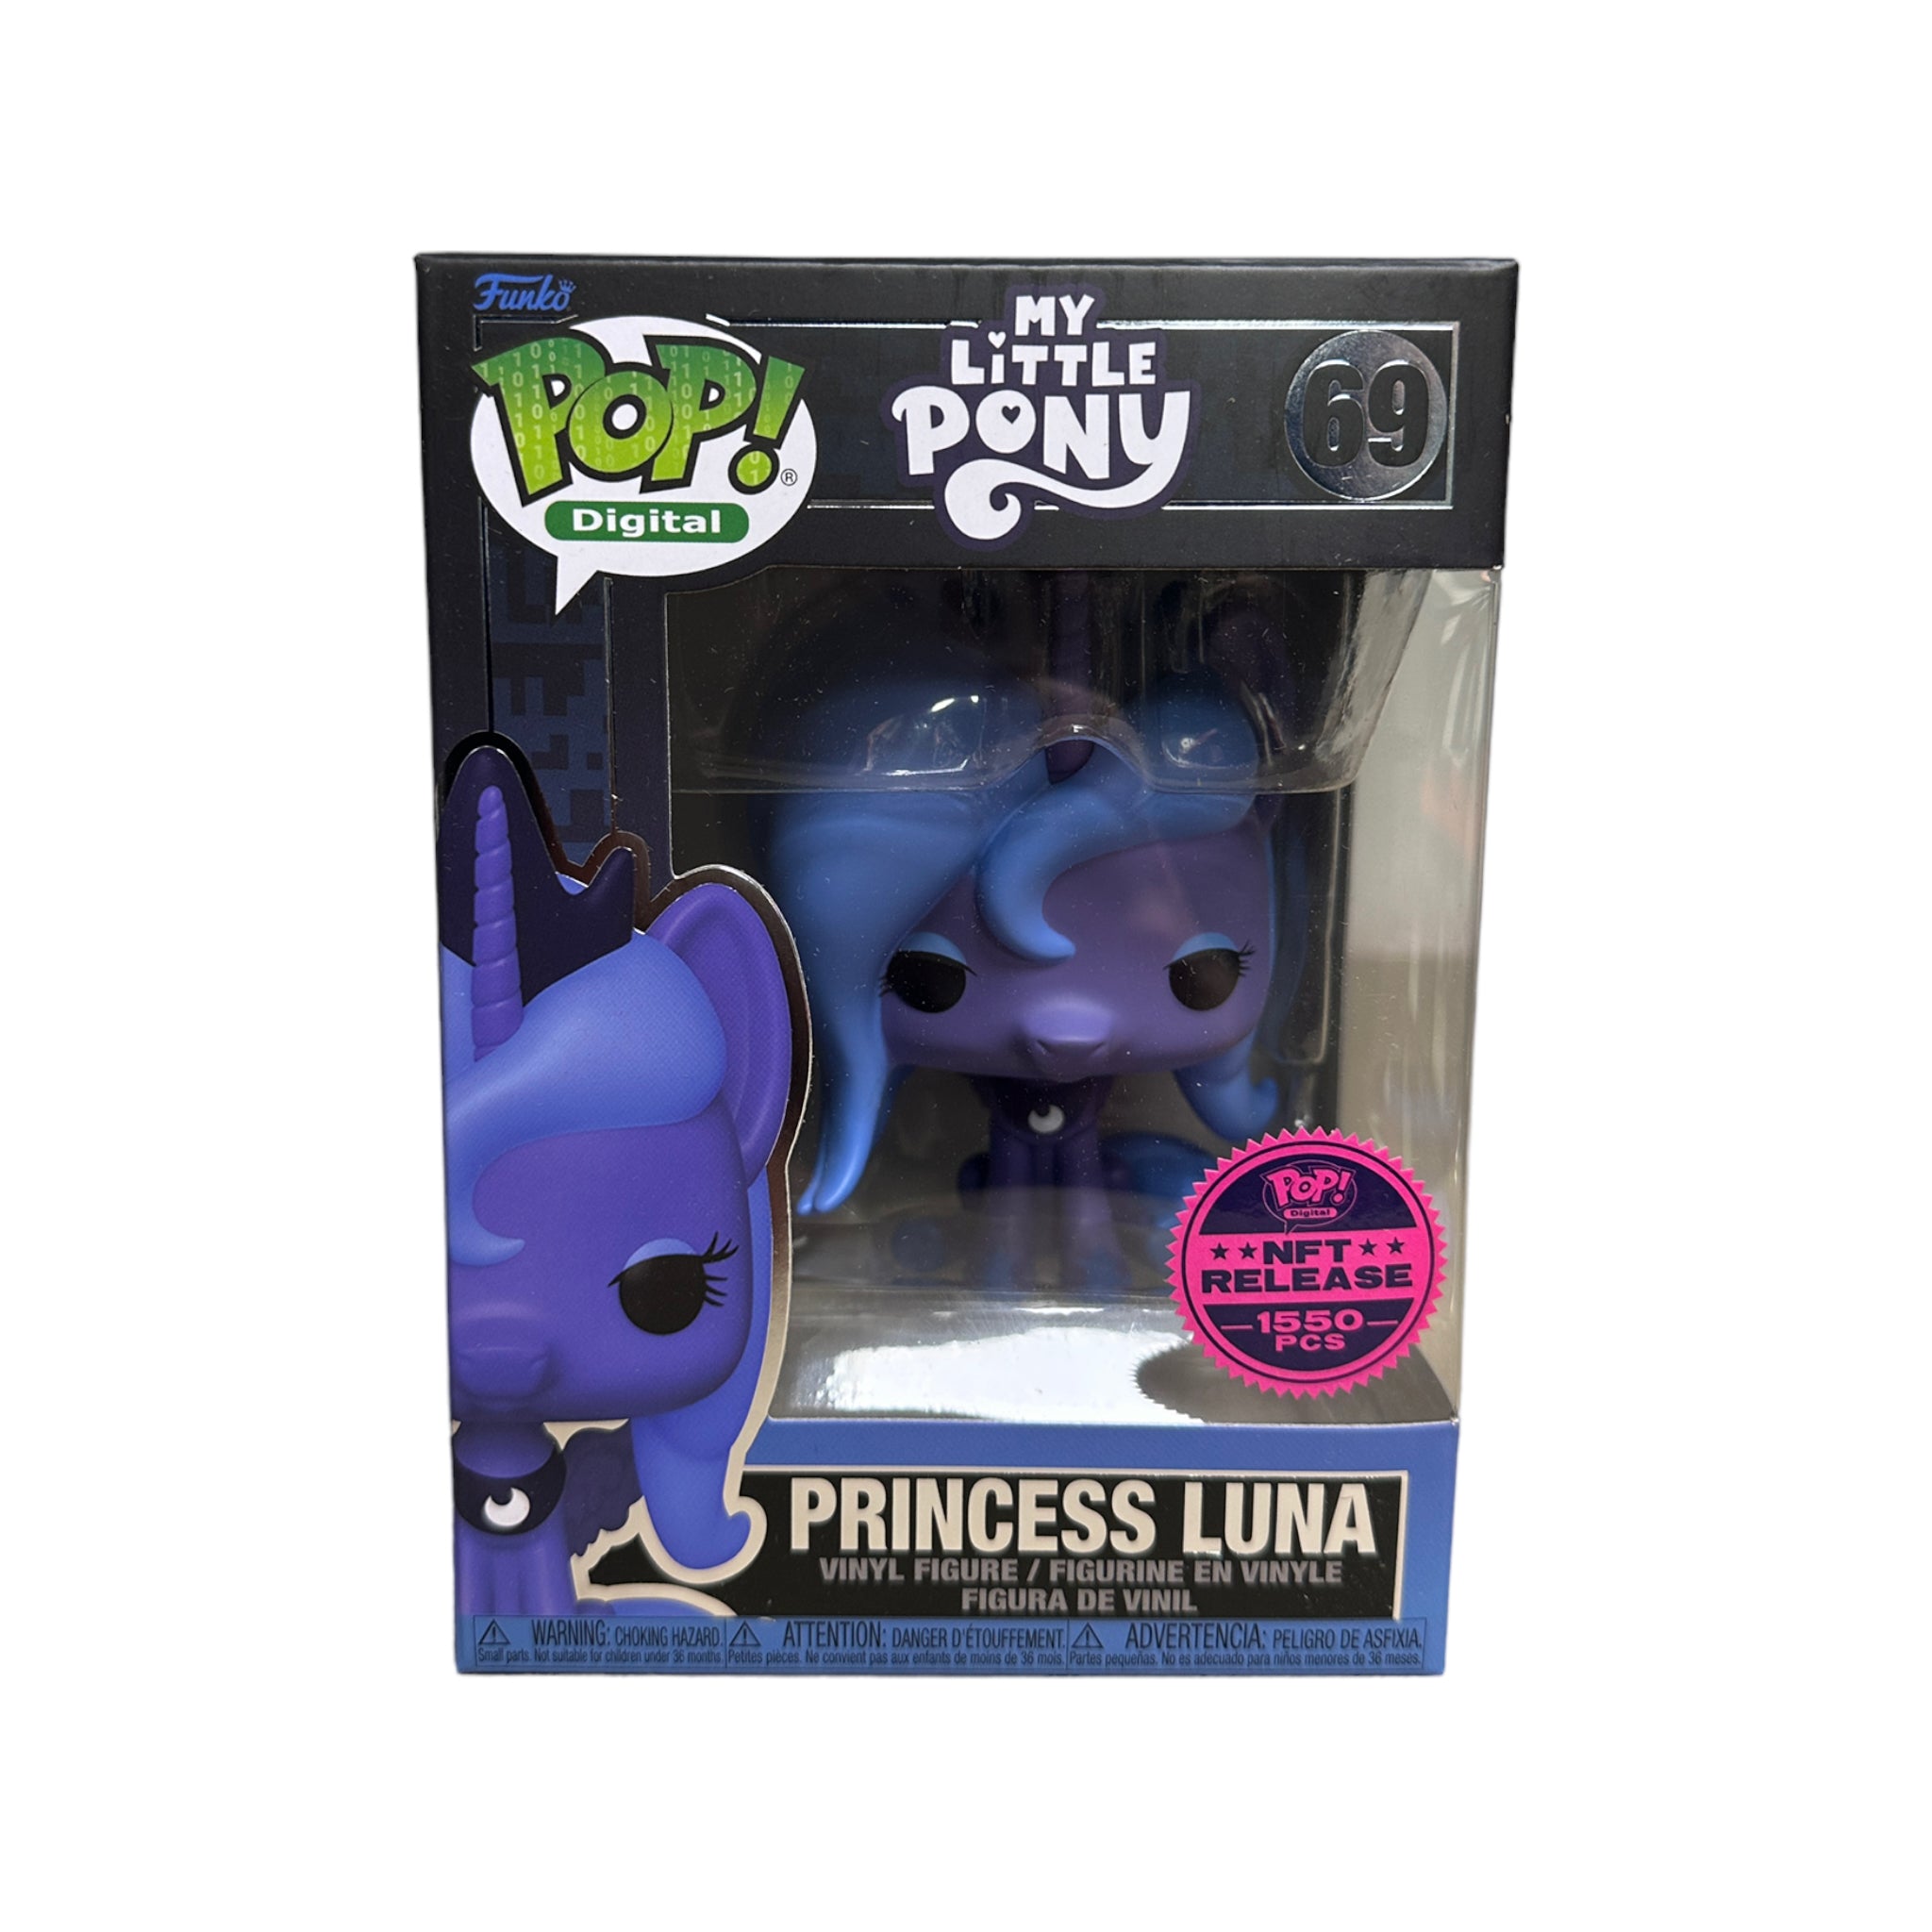 Princess Luna #69 Funko Pop! - My Little Pony - NFT Release Exclusive LE1550 Pcs - Condition 9/10